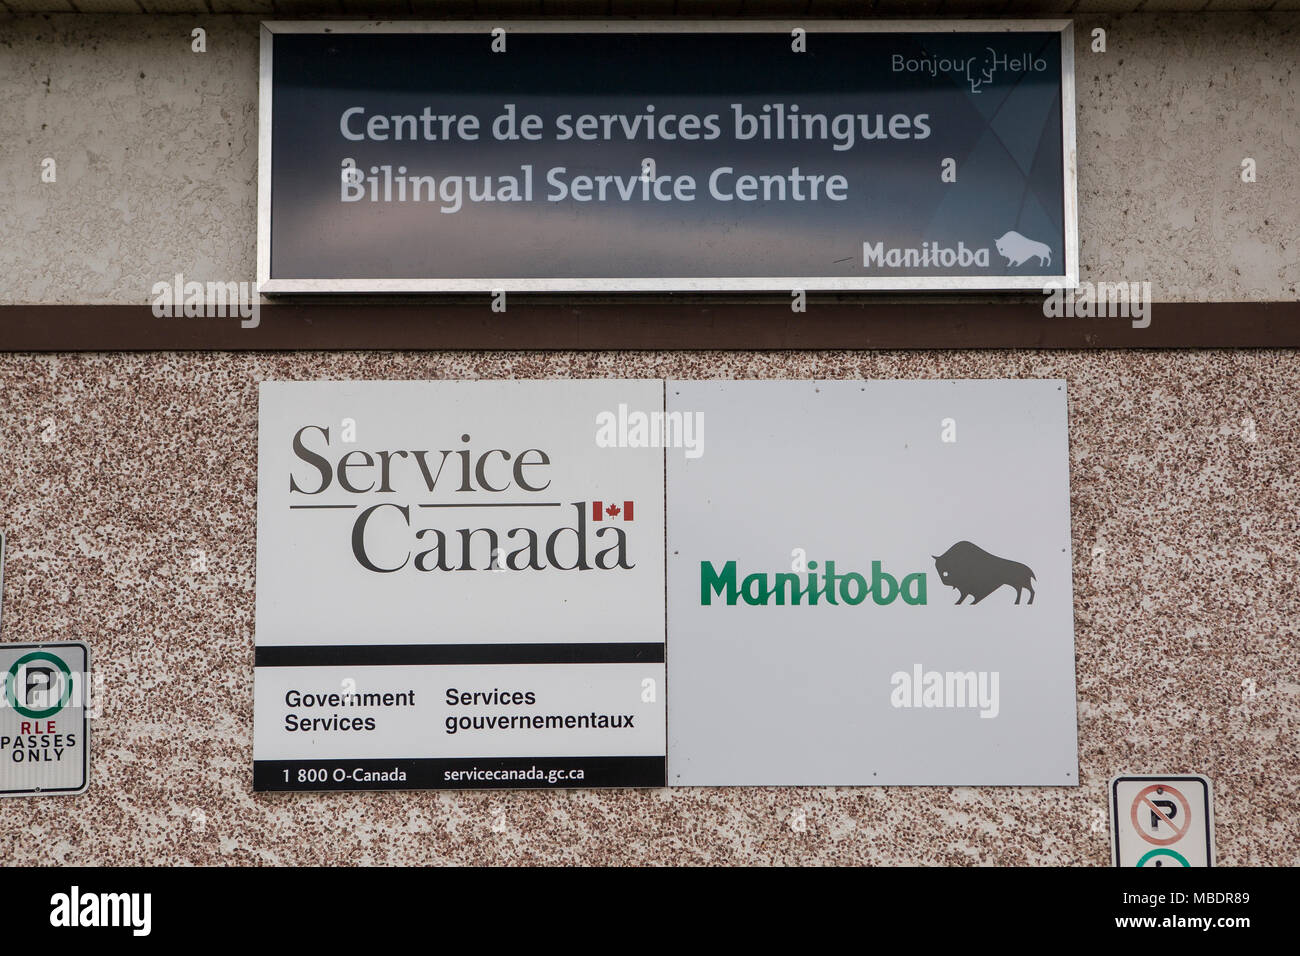 Un servizio bilingue centro (centro de service bilingues) è visto in Saint-Laurent, Manitoba, mercoledì 12 agosto, 2015. Foto Stock